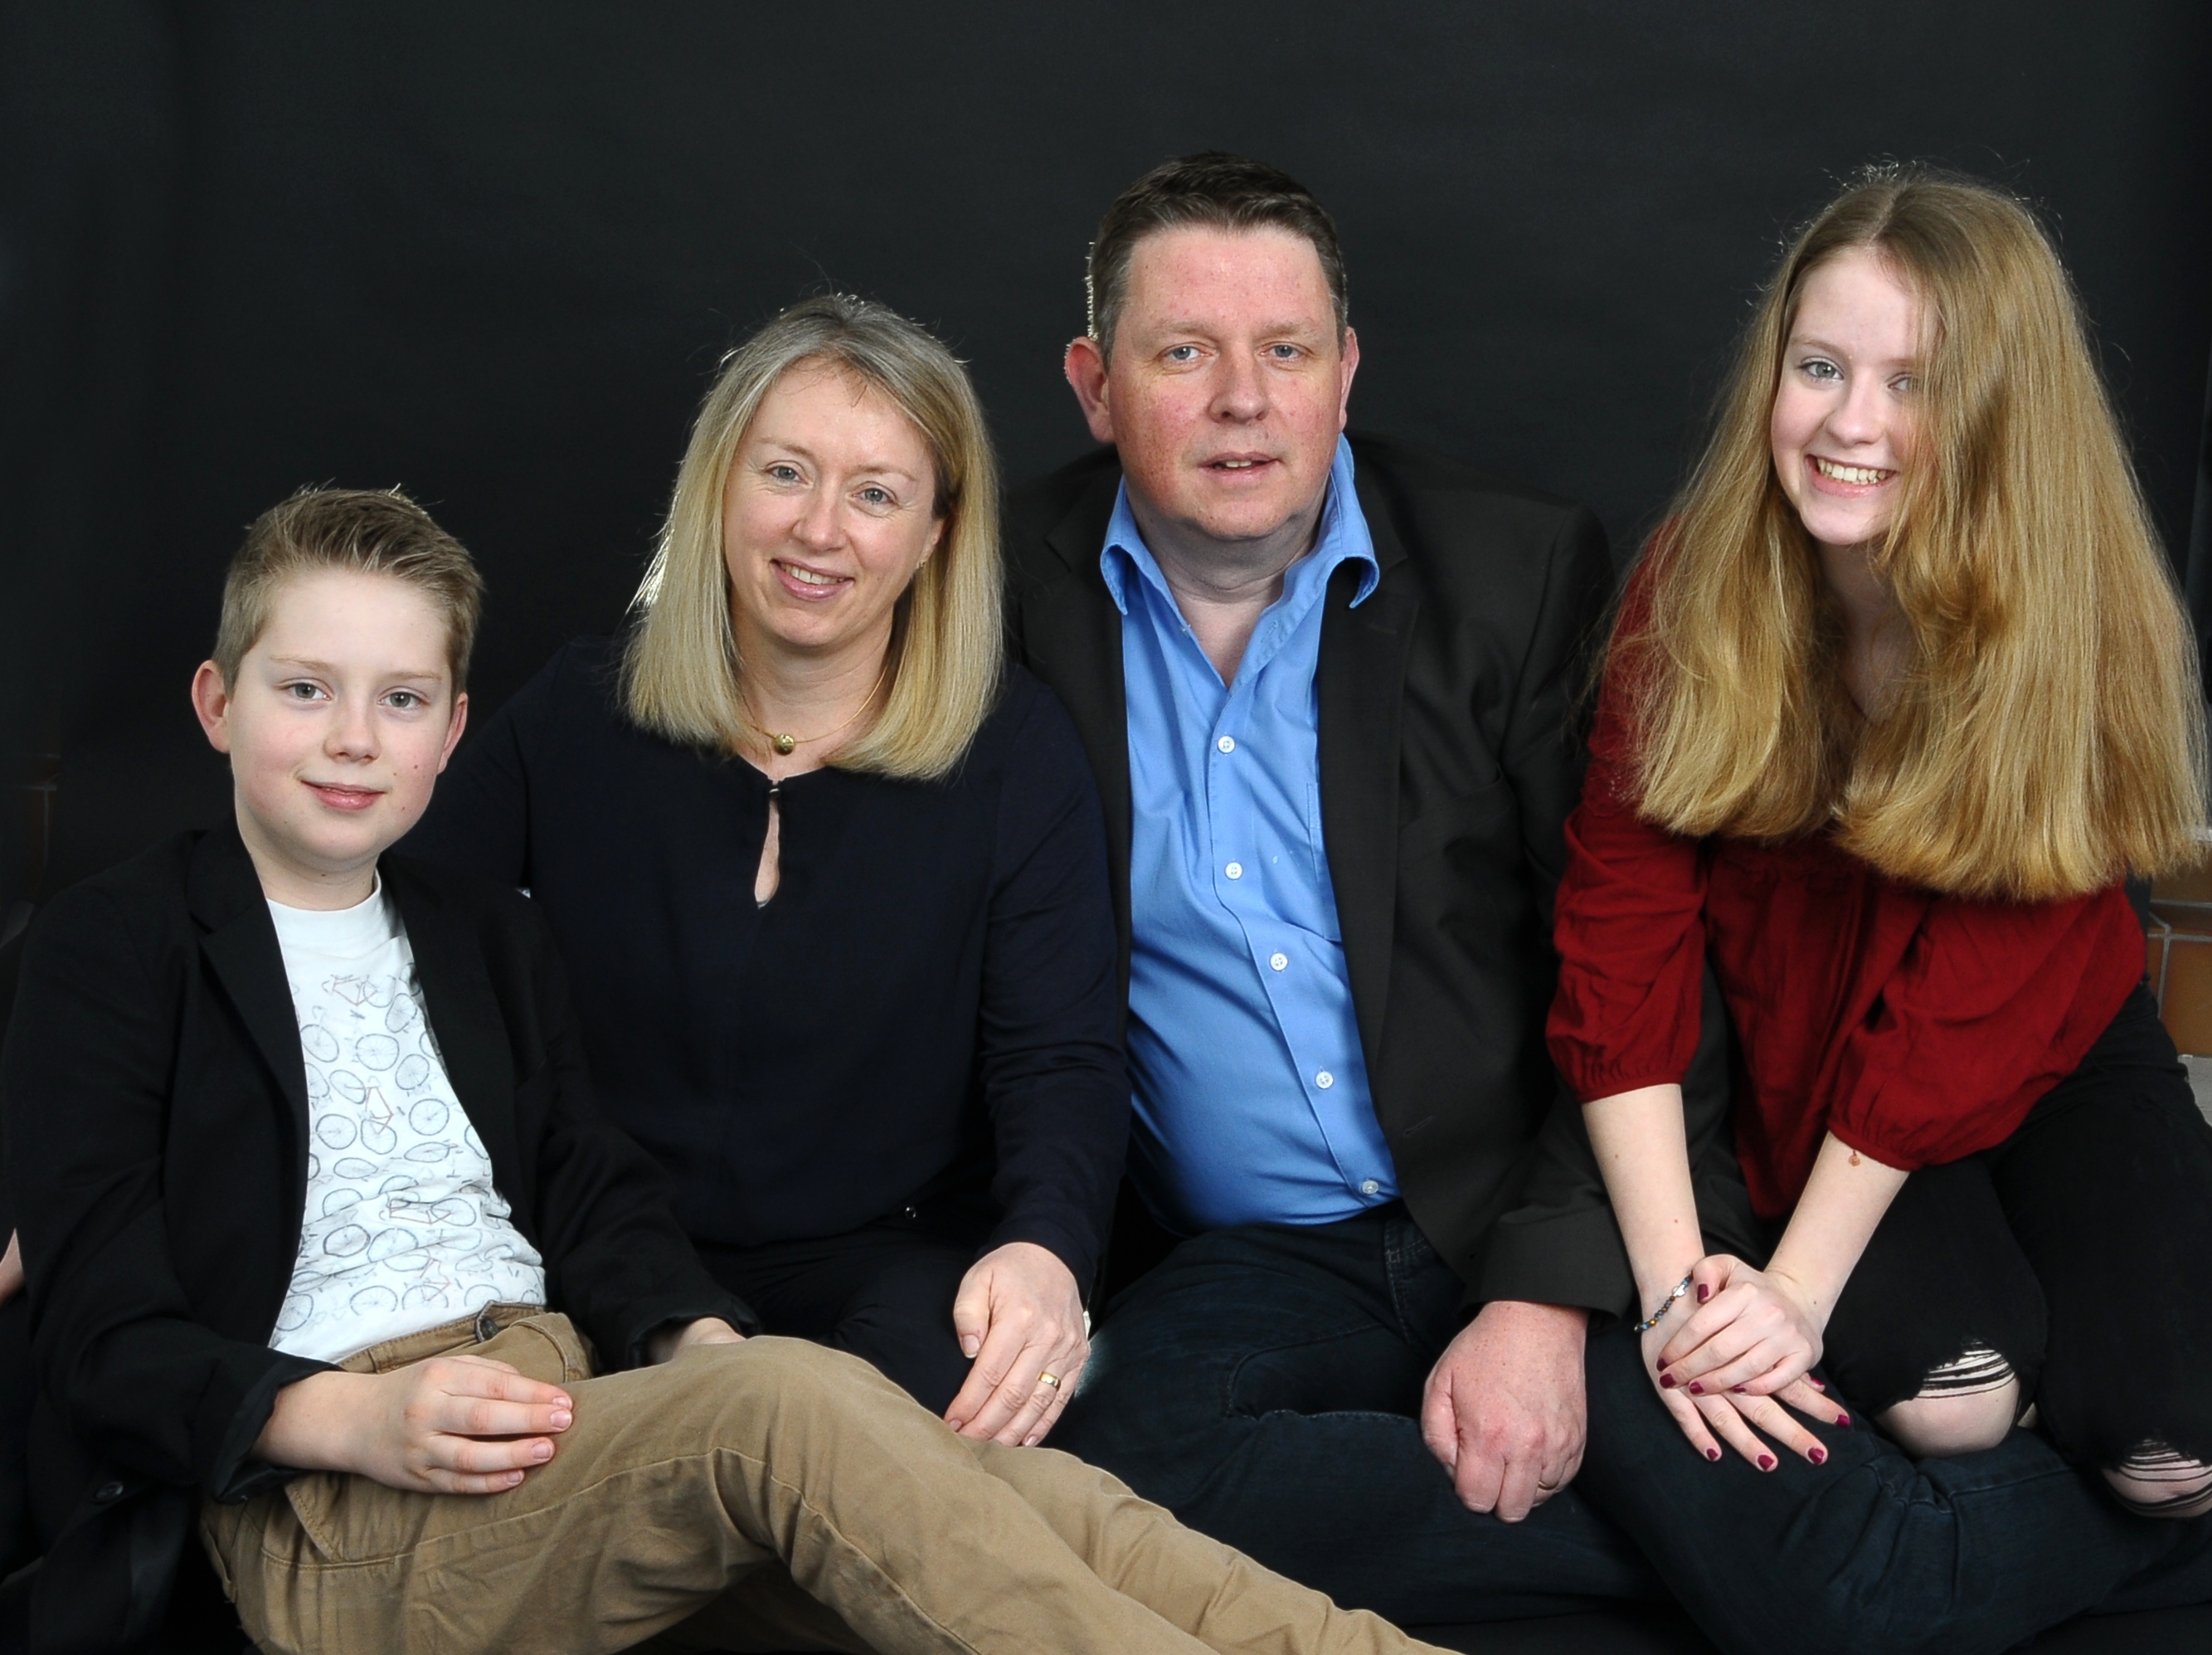 Familienporträt einer durchschnittlich großen Famile, Vater mit drei Kindern.